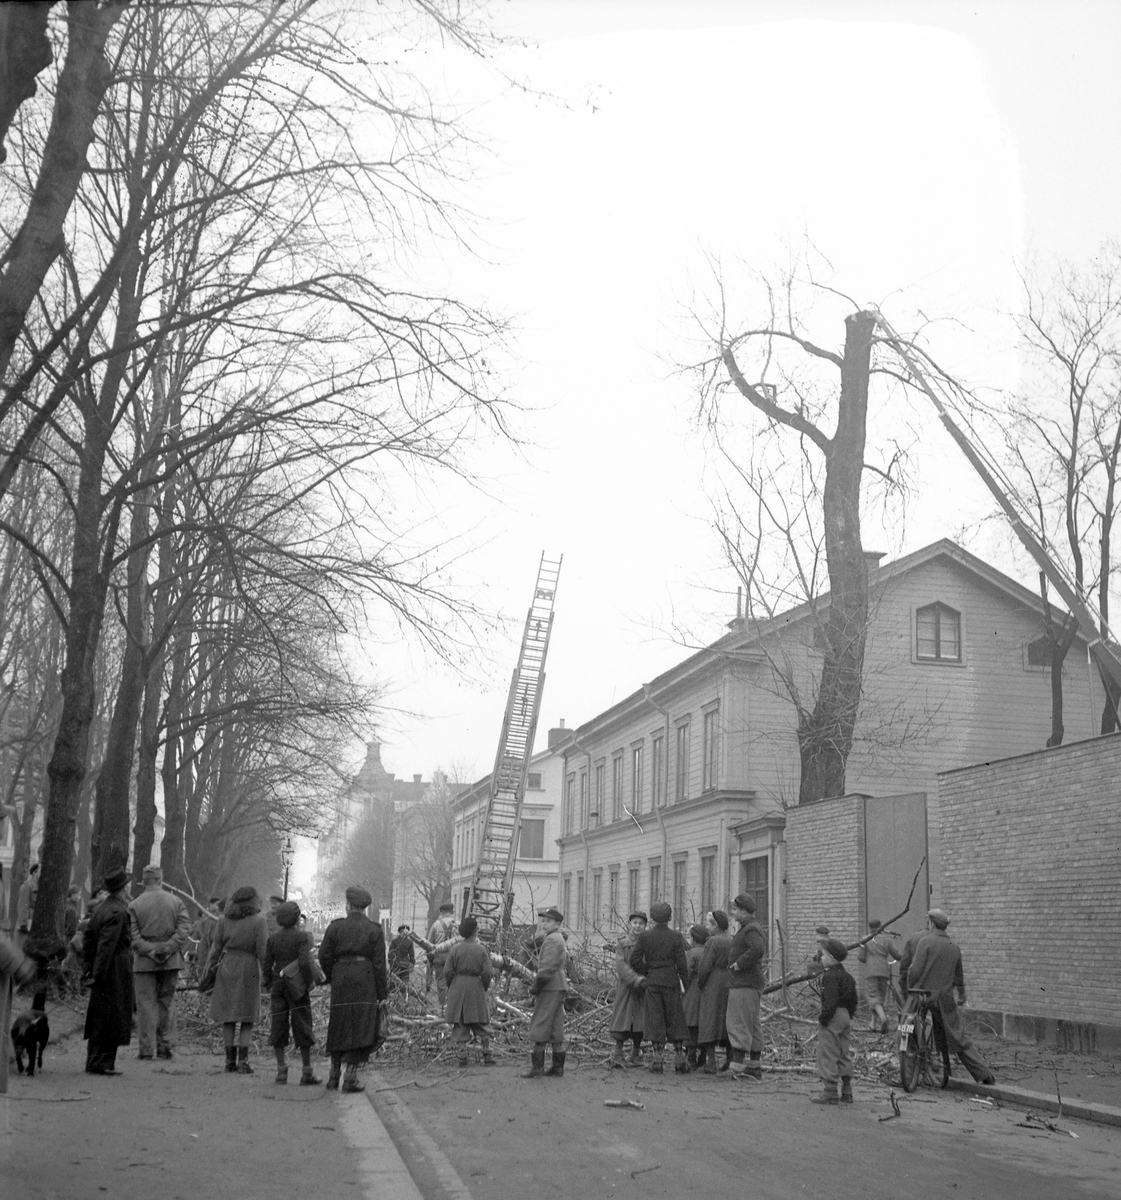 Gammal Poppel vid Elverket fälls

29 november 1943